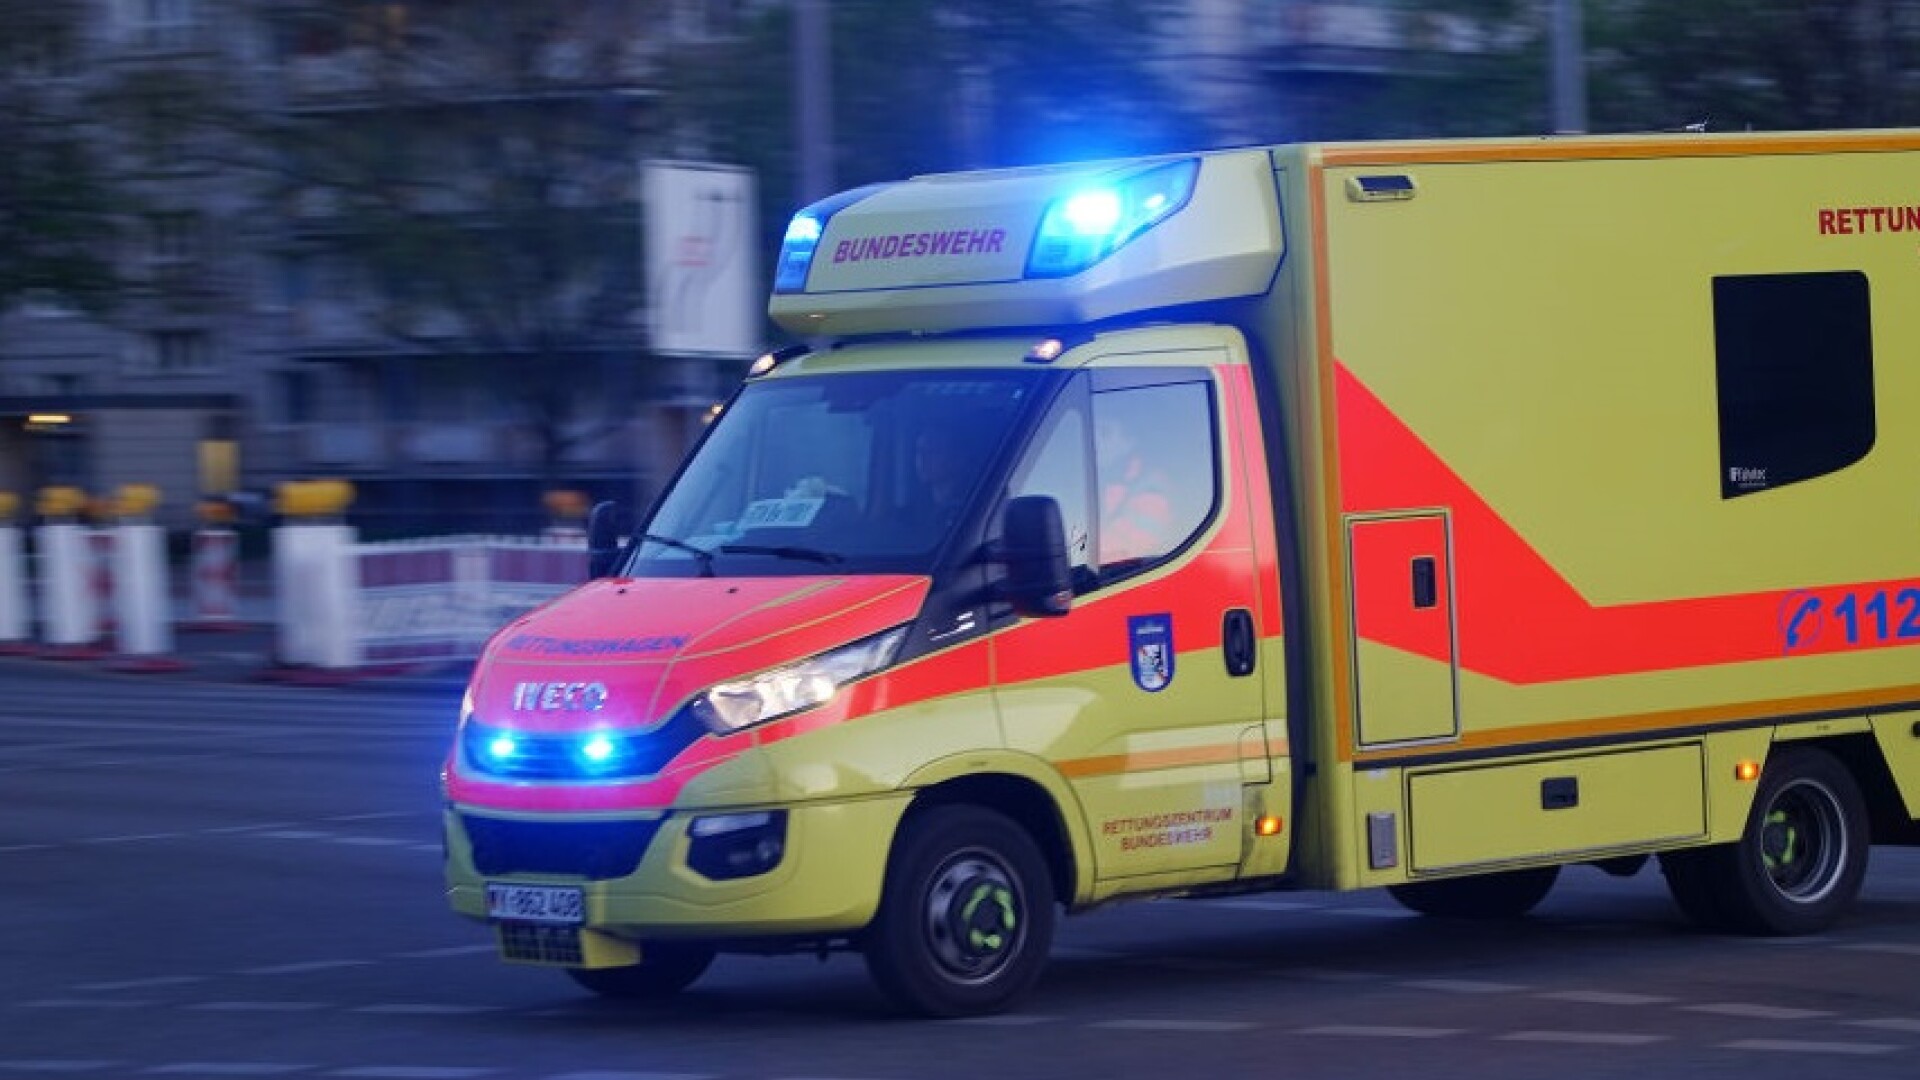 Nouă persoane au fost rănite în Germania, după ce balconul în care petreceau s-a prăbușit